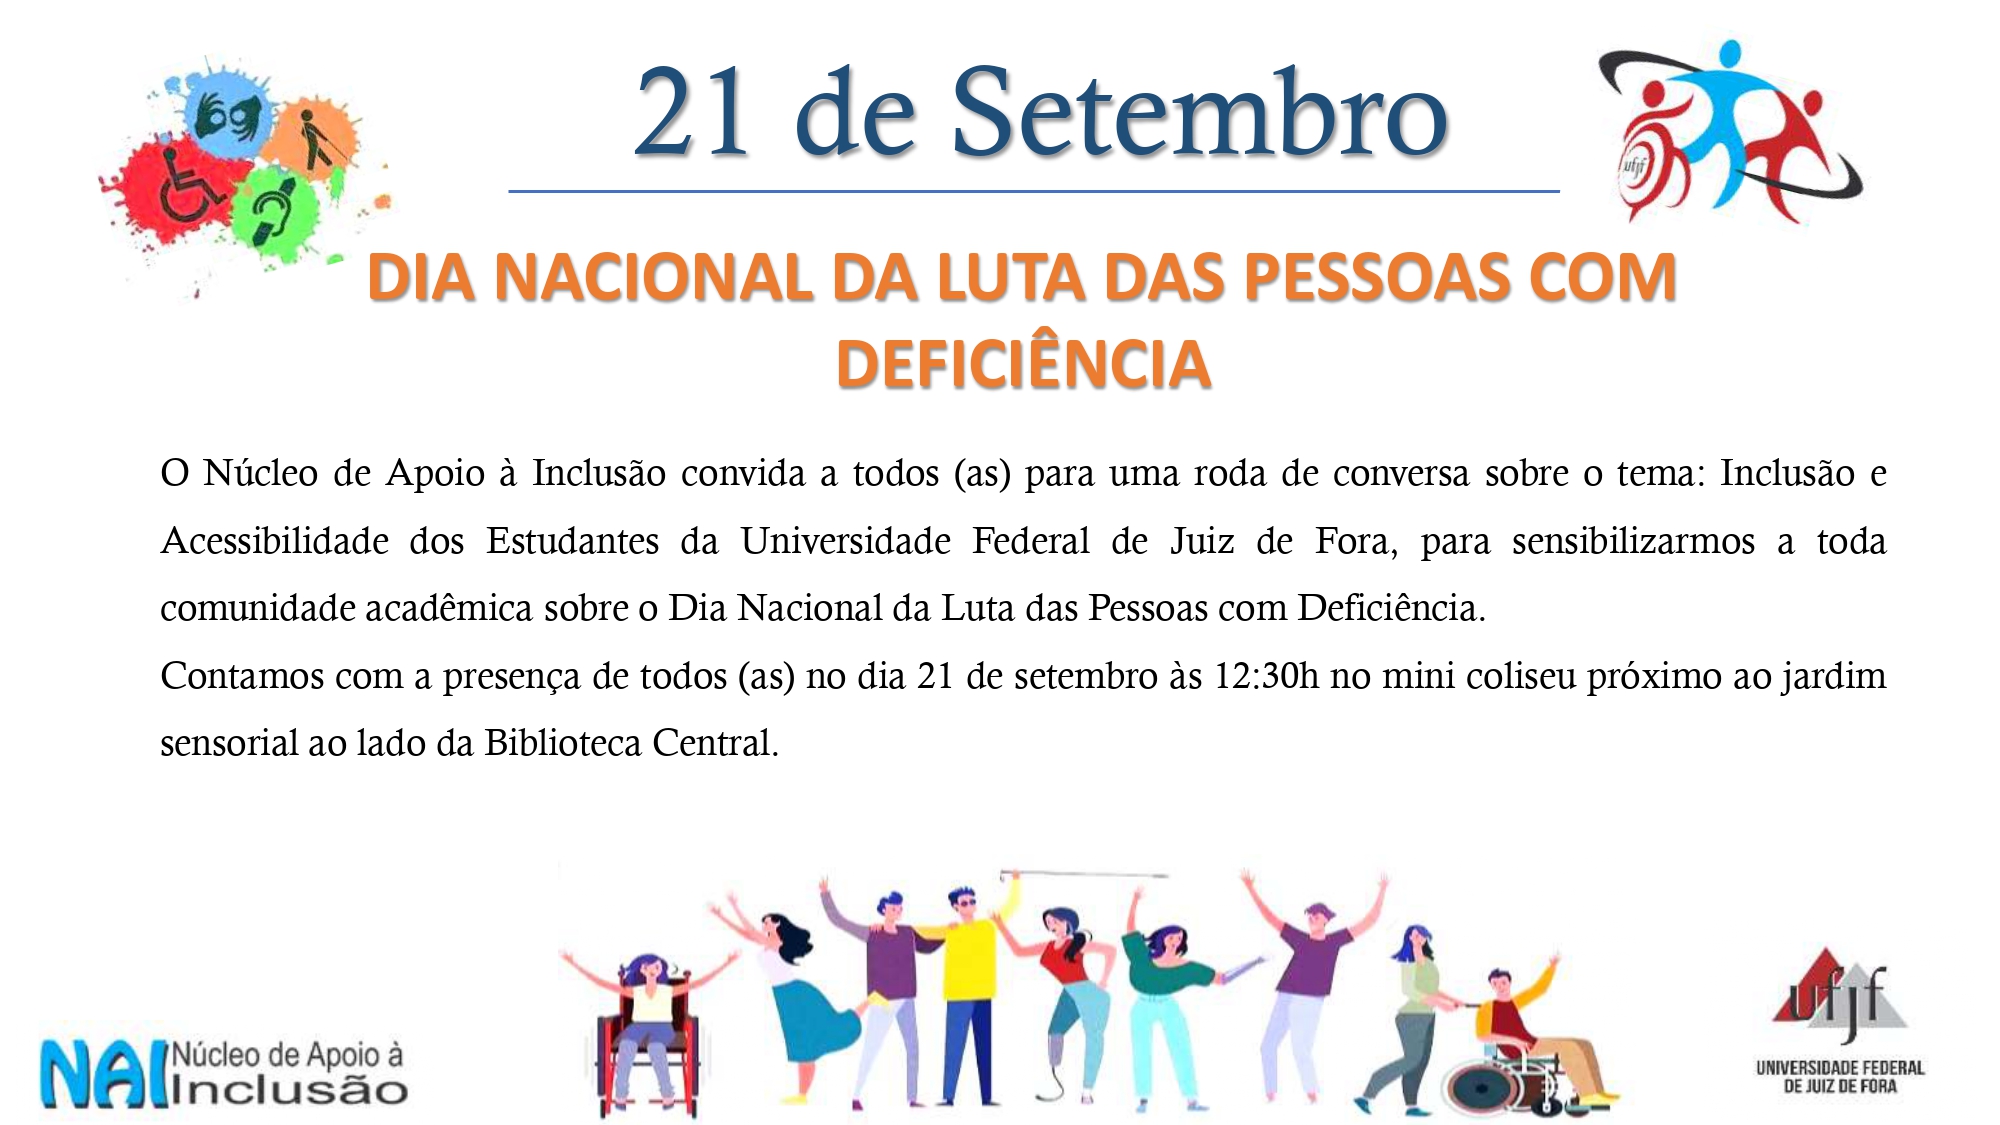 21 de Setembro – Dia Nacional da Luta das Pessoas com Deficiência